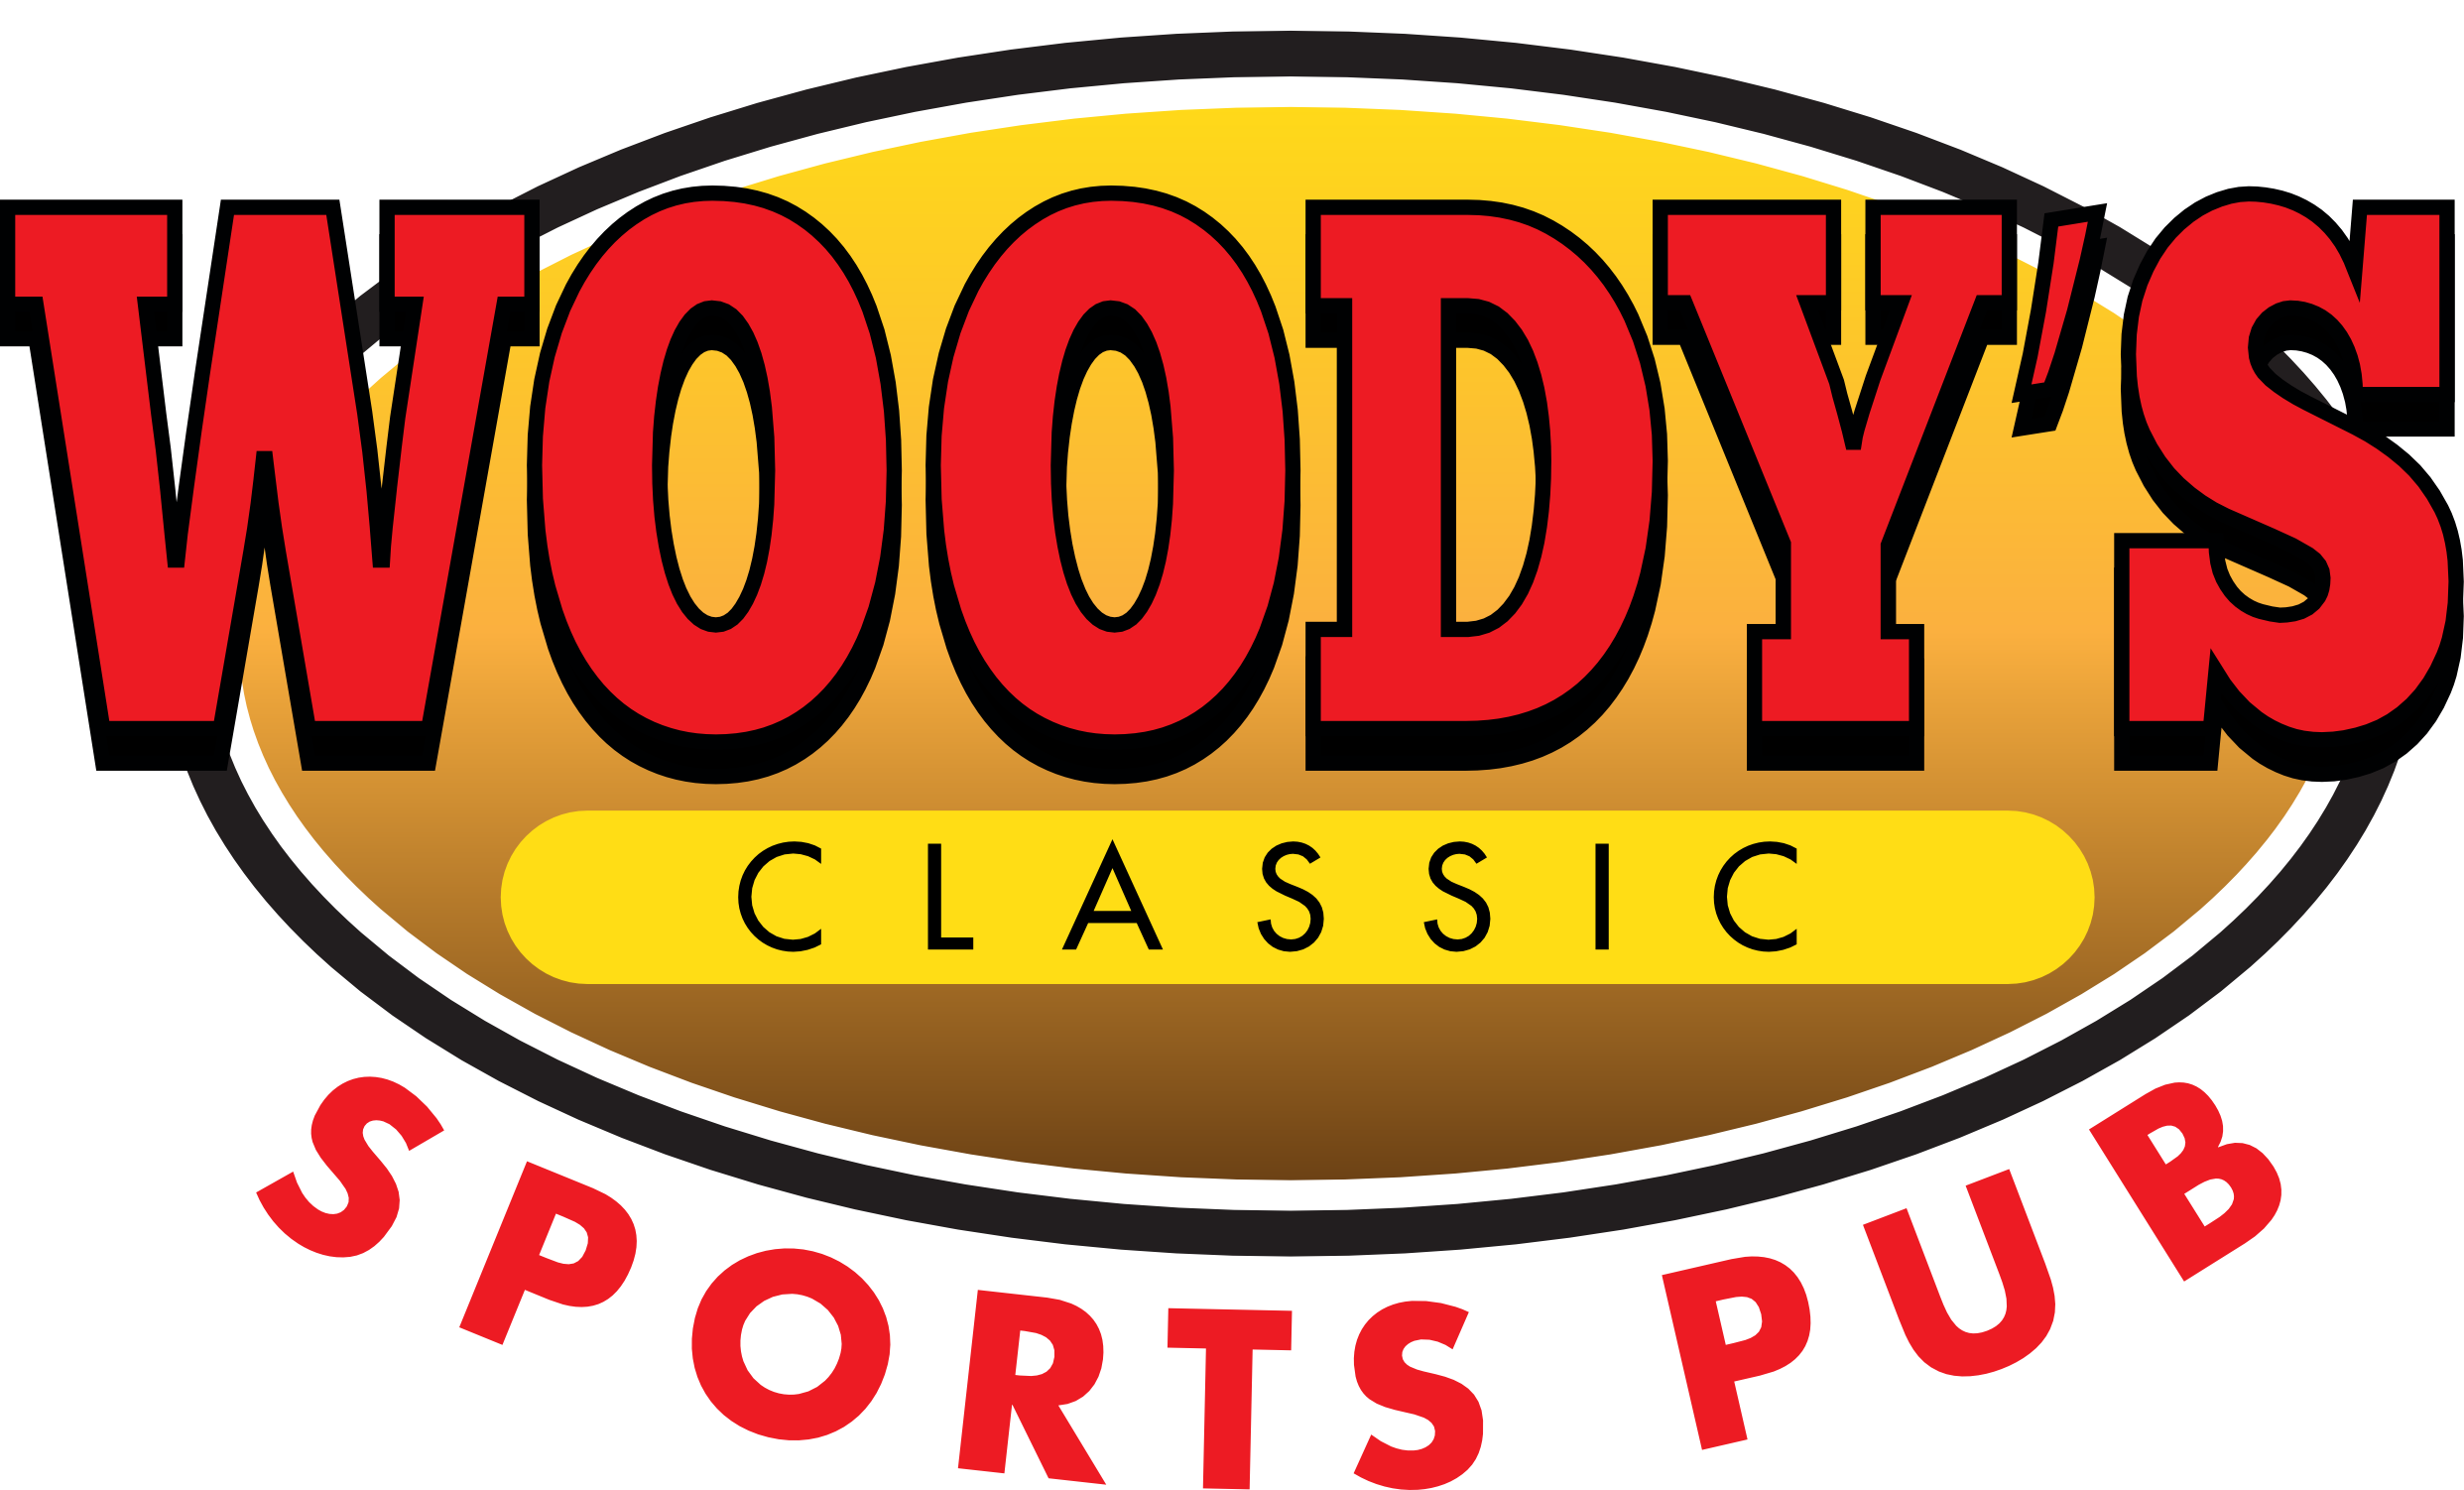 Woody's Classic Sports Pub - Woody's Classic Sports Pub (2484x1502)